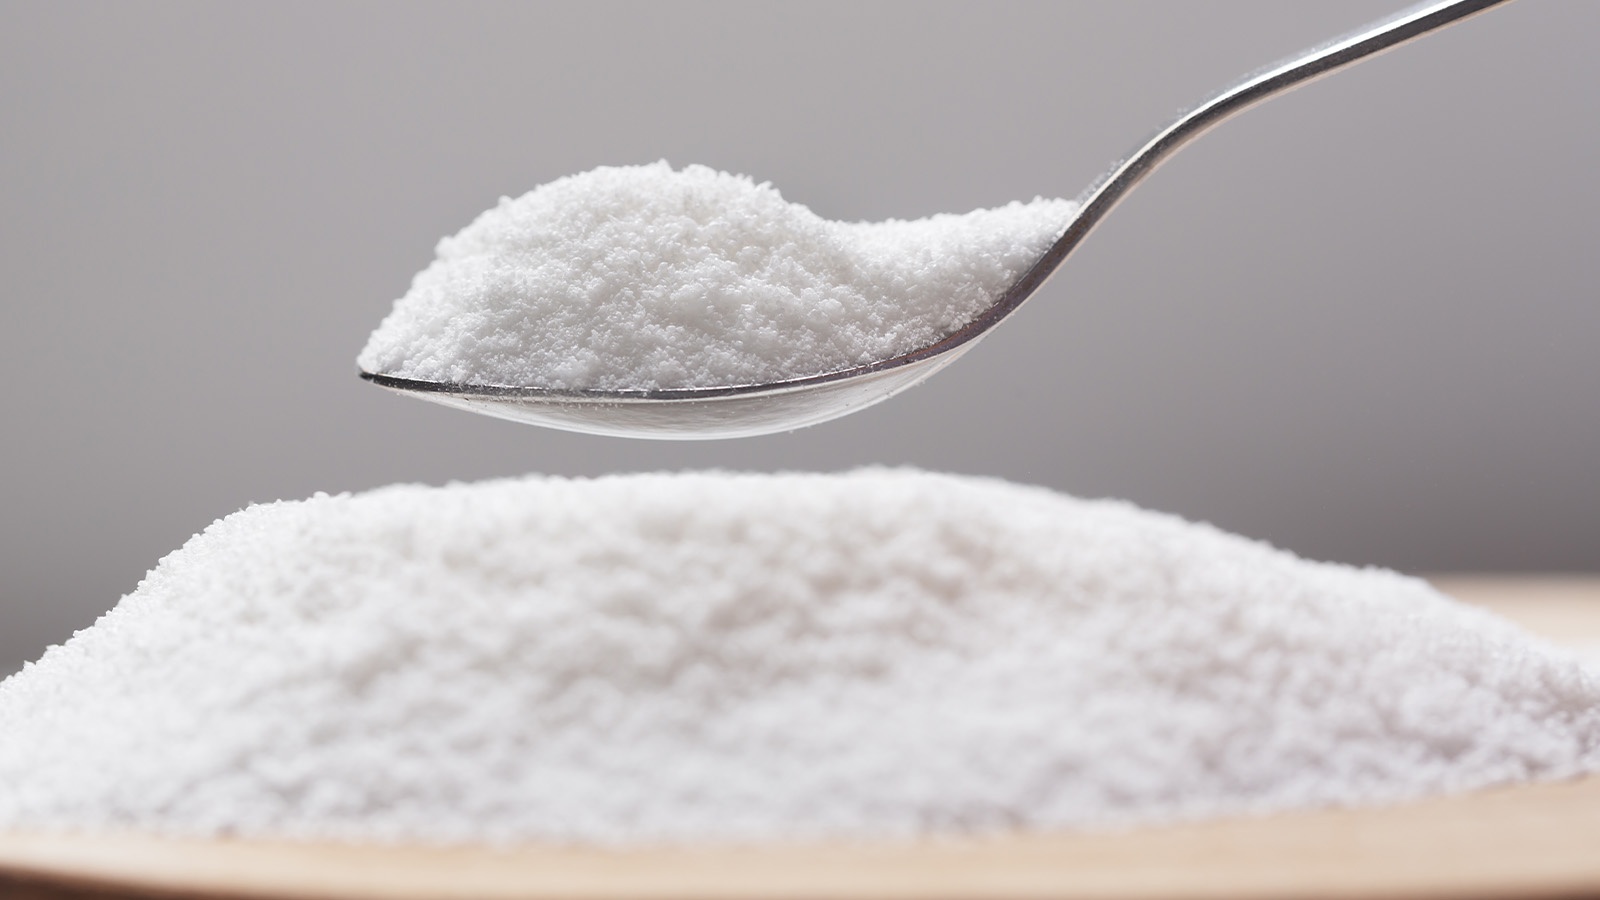 Aspartame: Is the sweet taste worth the harm?